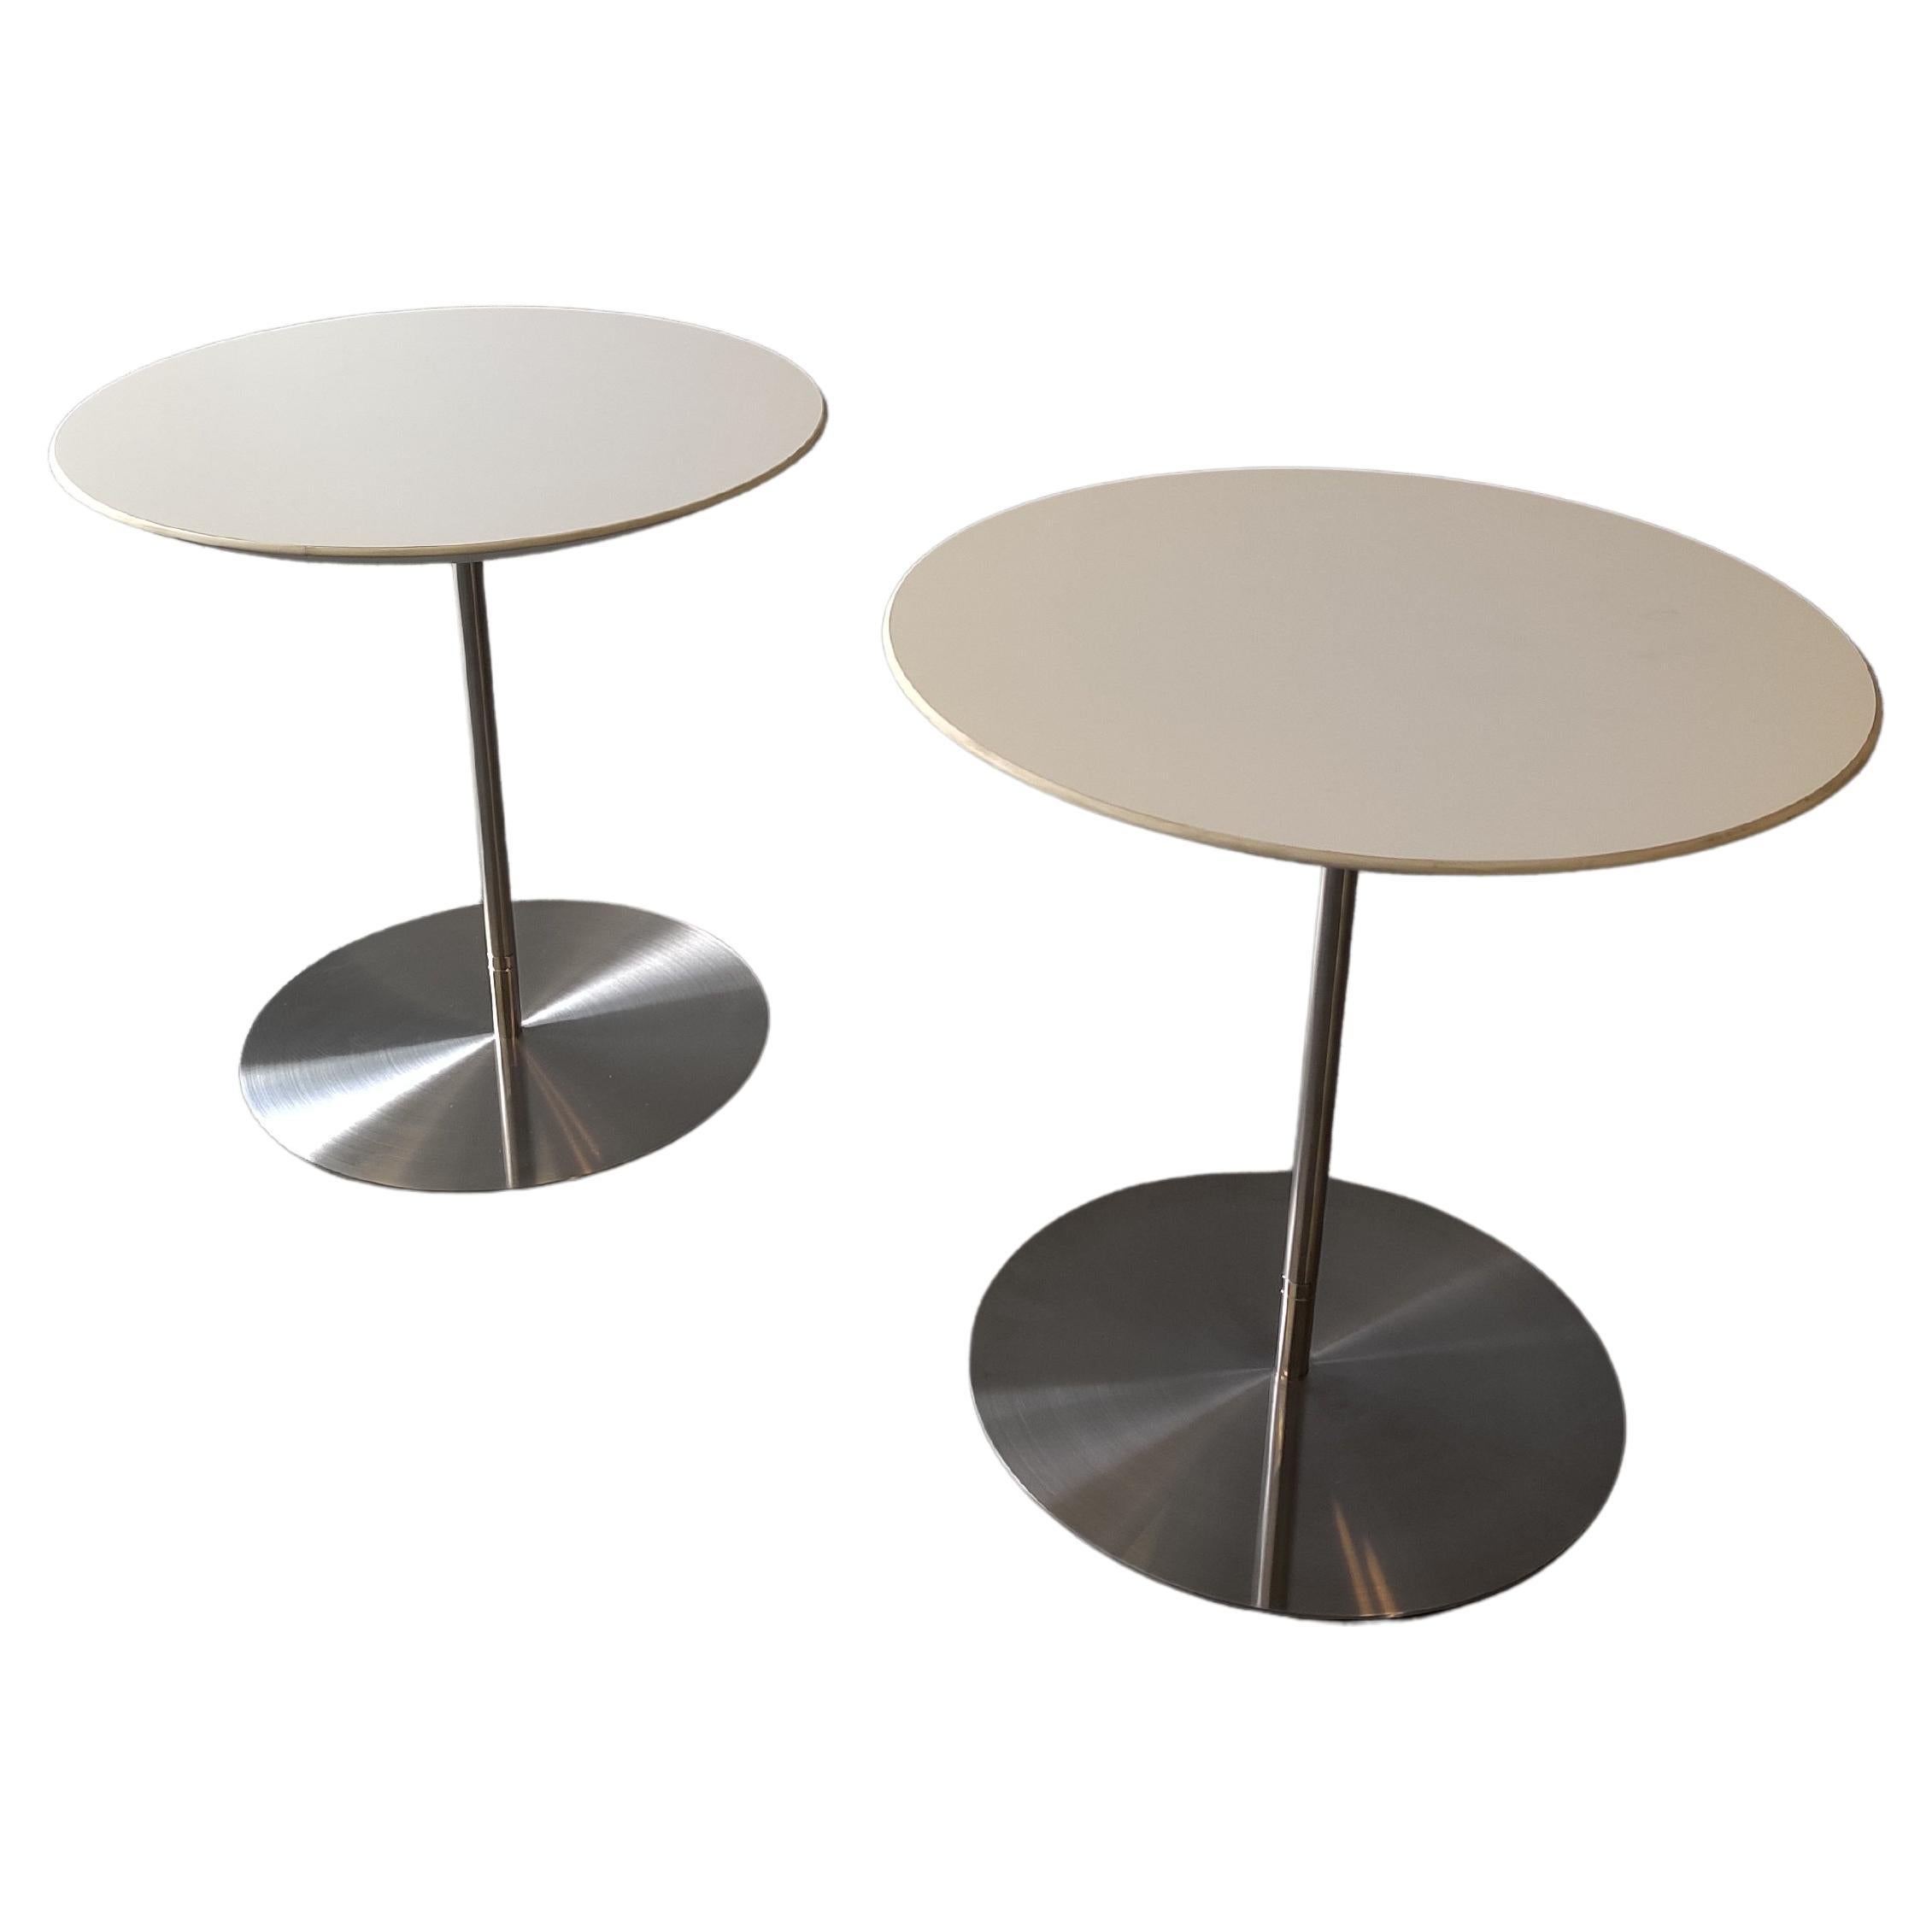 Paire de tables d'appoint Quiet de Jephson Robb, Bernhardt Design en acier inoxydable stratifié